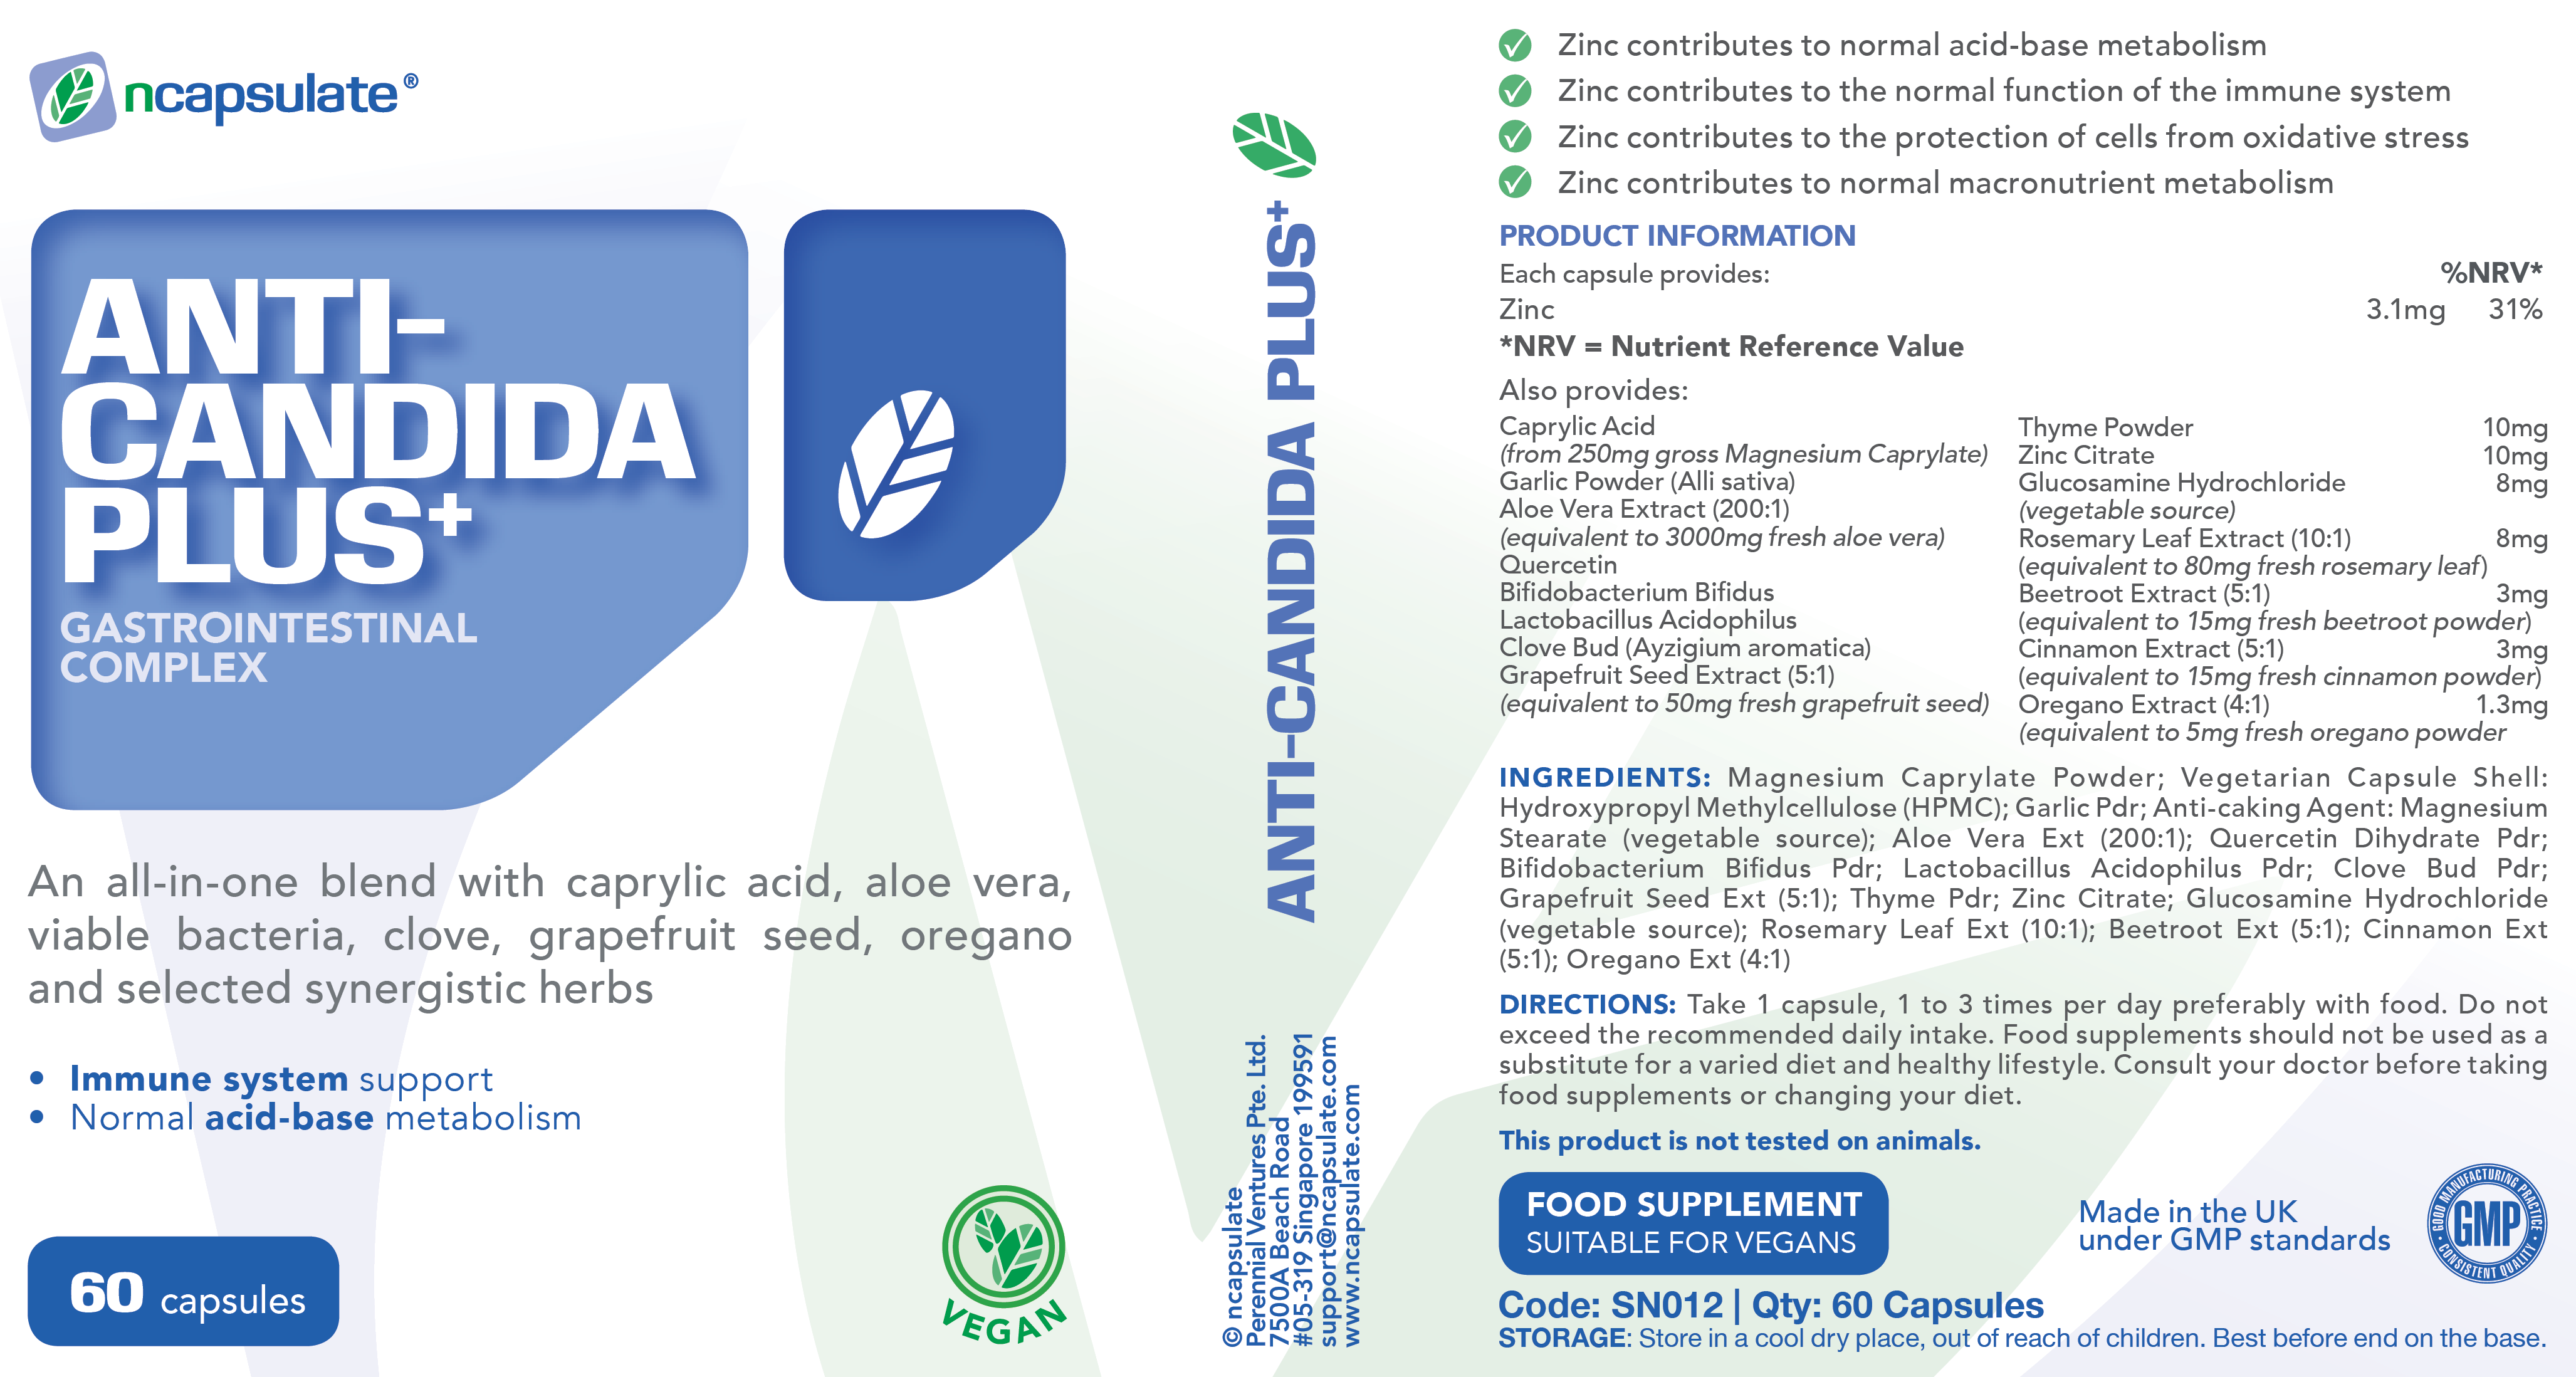 ncapsulate® ANTI CANDIDA PLUS+ Premium Health Supplement Product Label